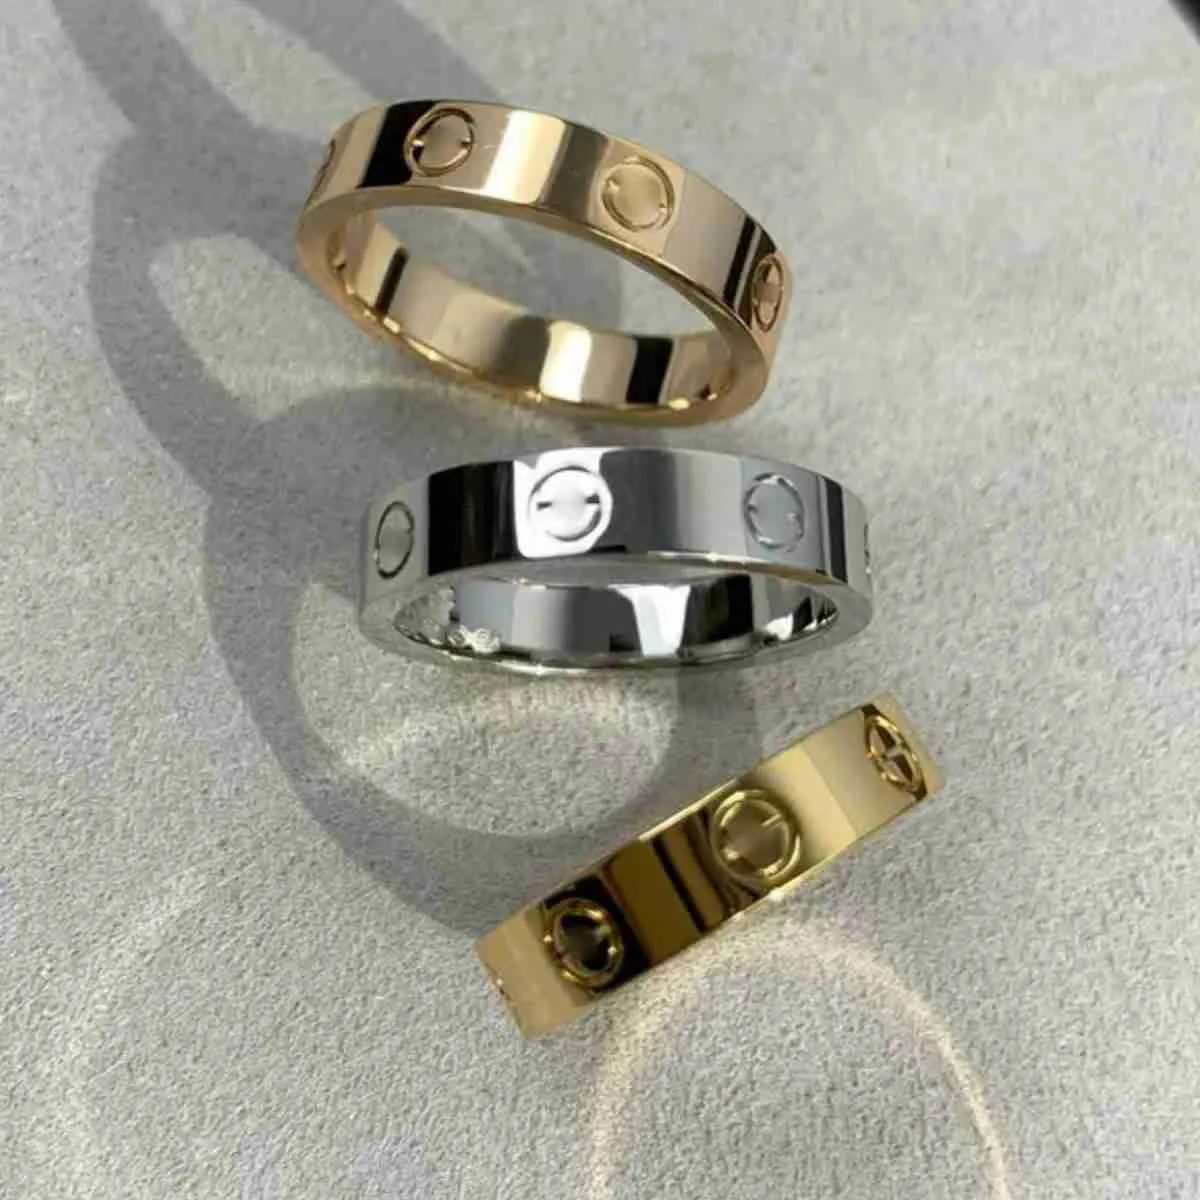 Jako oryginalny projektant grawerować 6 mm diamentowy pierścień miłosny 18k złota srebrna róża 750 Pierścionki ze stali nierdzewnej Kobiety mężczyzn miłośnicy biżuterii ślubnej Prezent Big USA Rozmiar 6 7 8 9 10 11 12